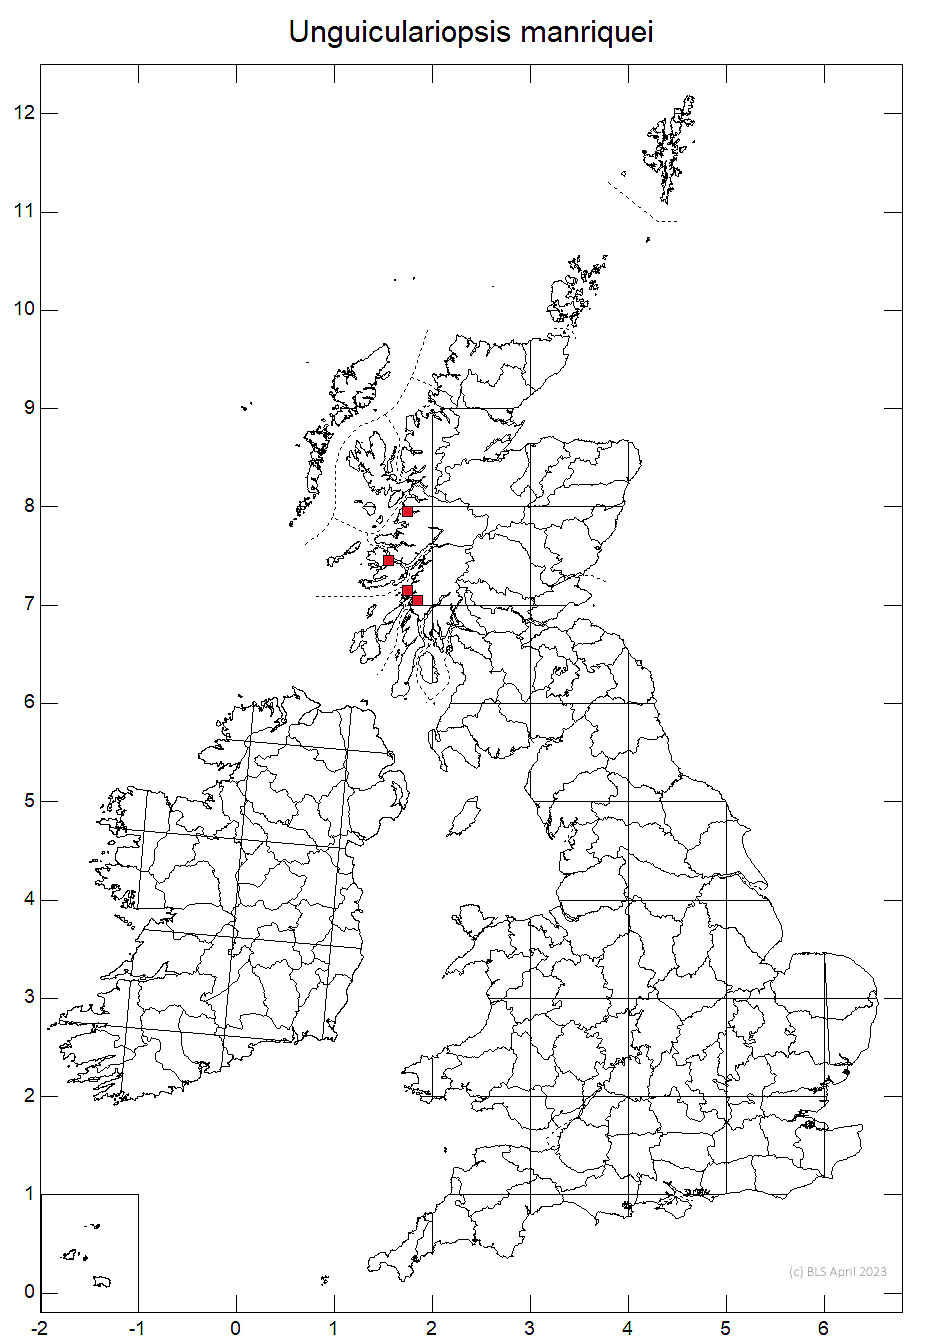 Unguiculariopsis manriquei 10km sq distribution map